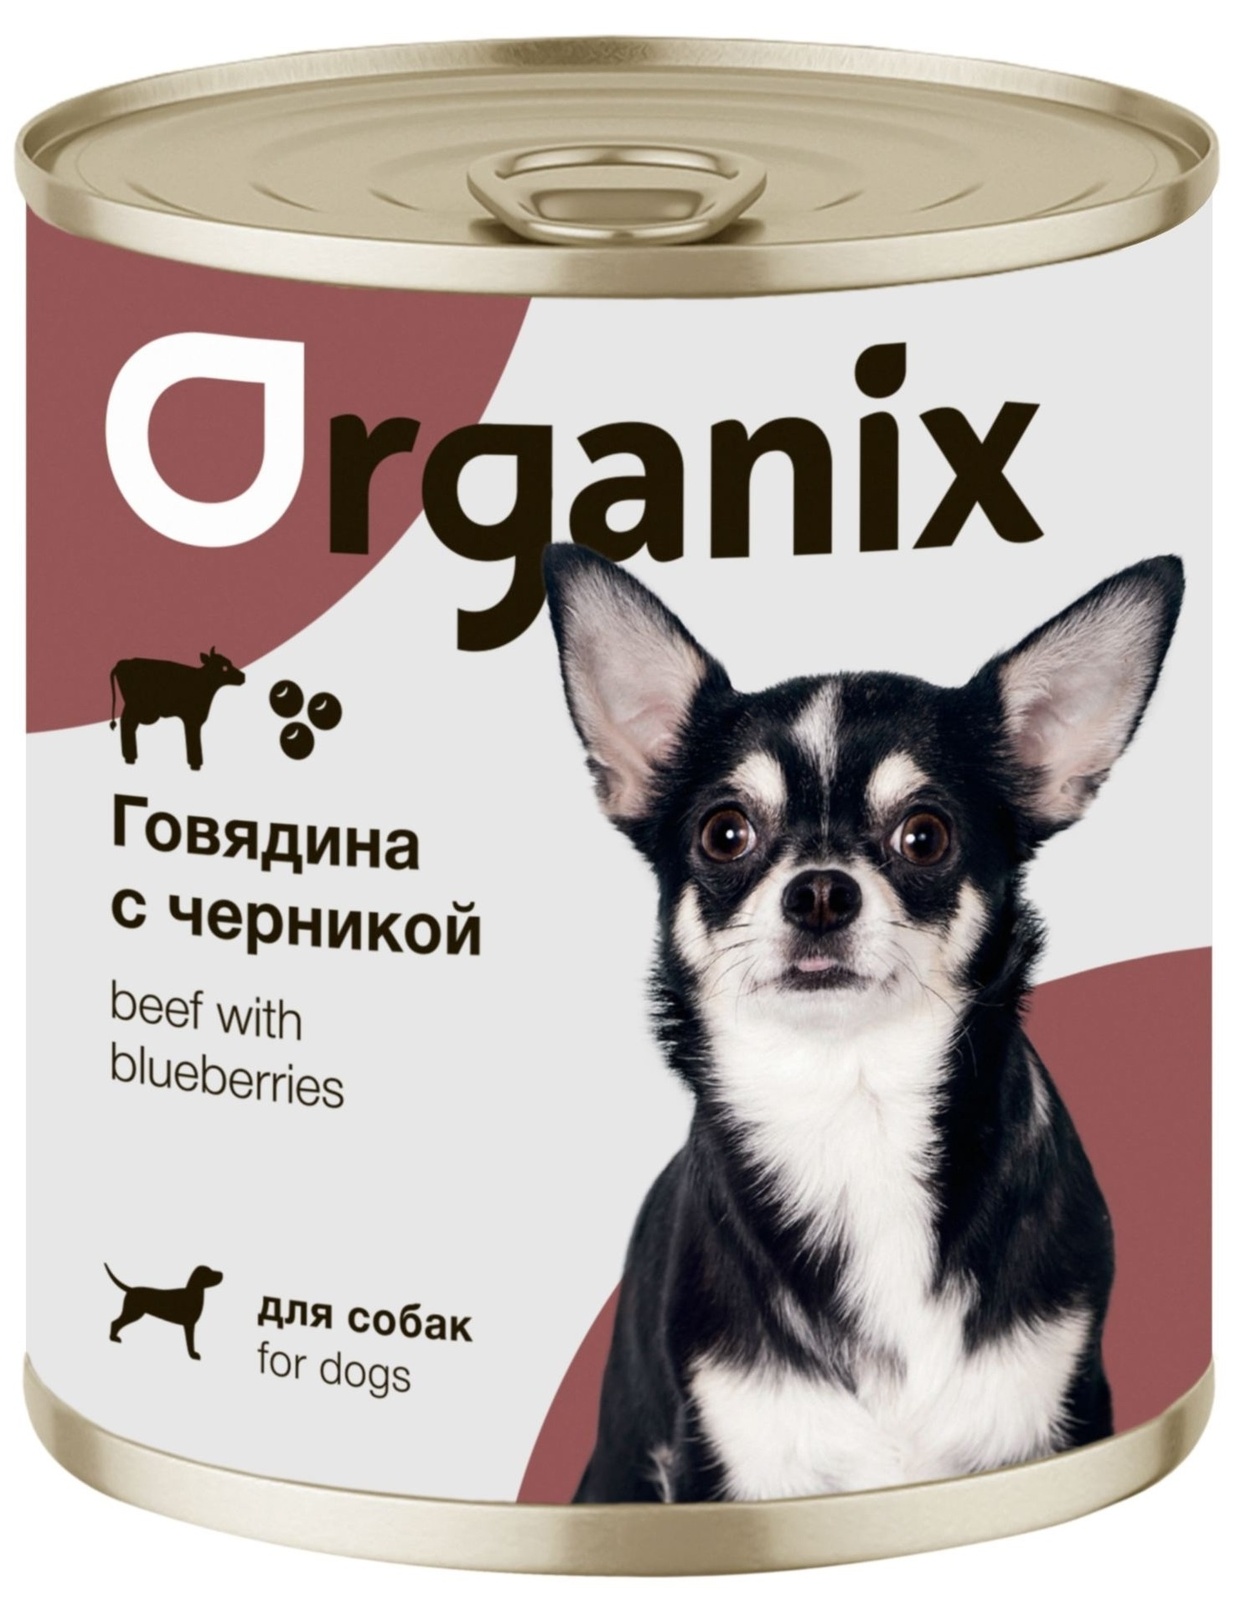 Organix консервы Organix консервы для собак Заливное из говядины с черникой (100 г) organix консервы organix монобелковые премиум консервы для собак с уткой 100 г